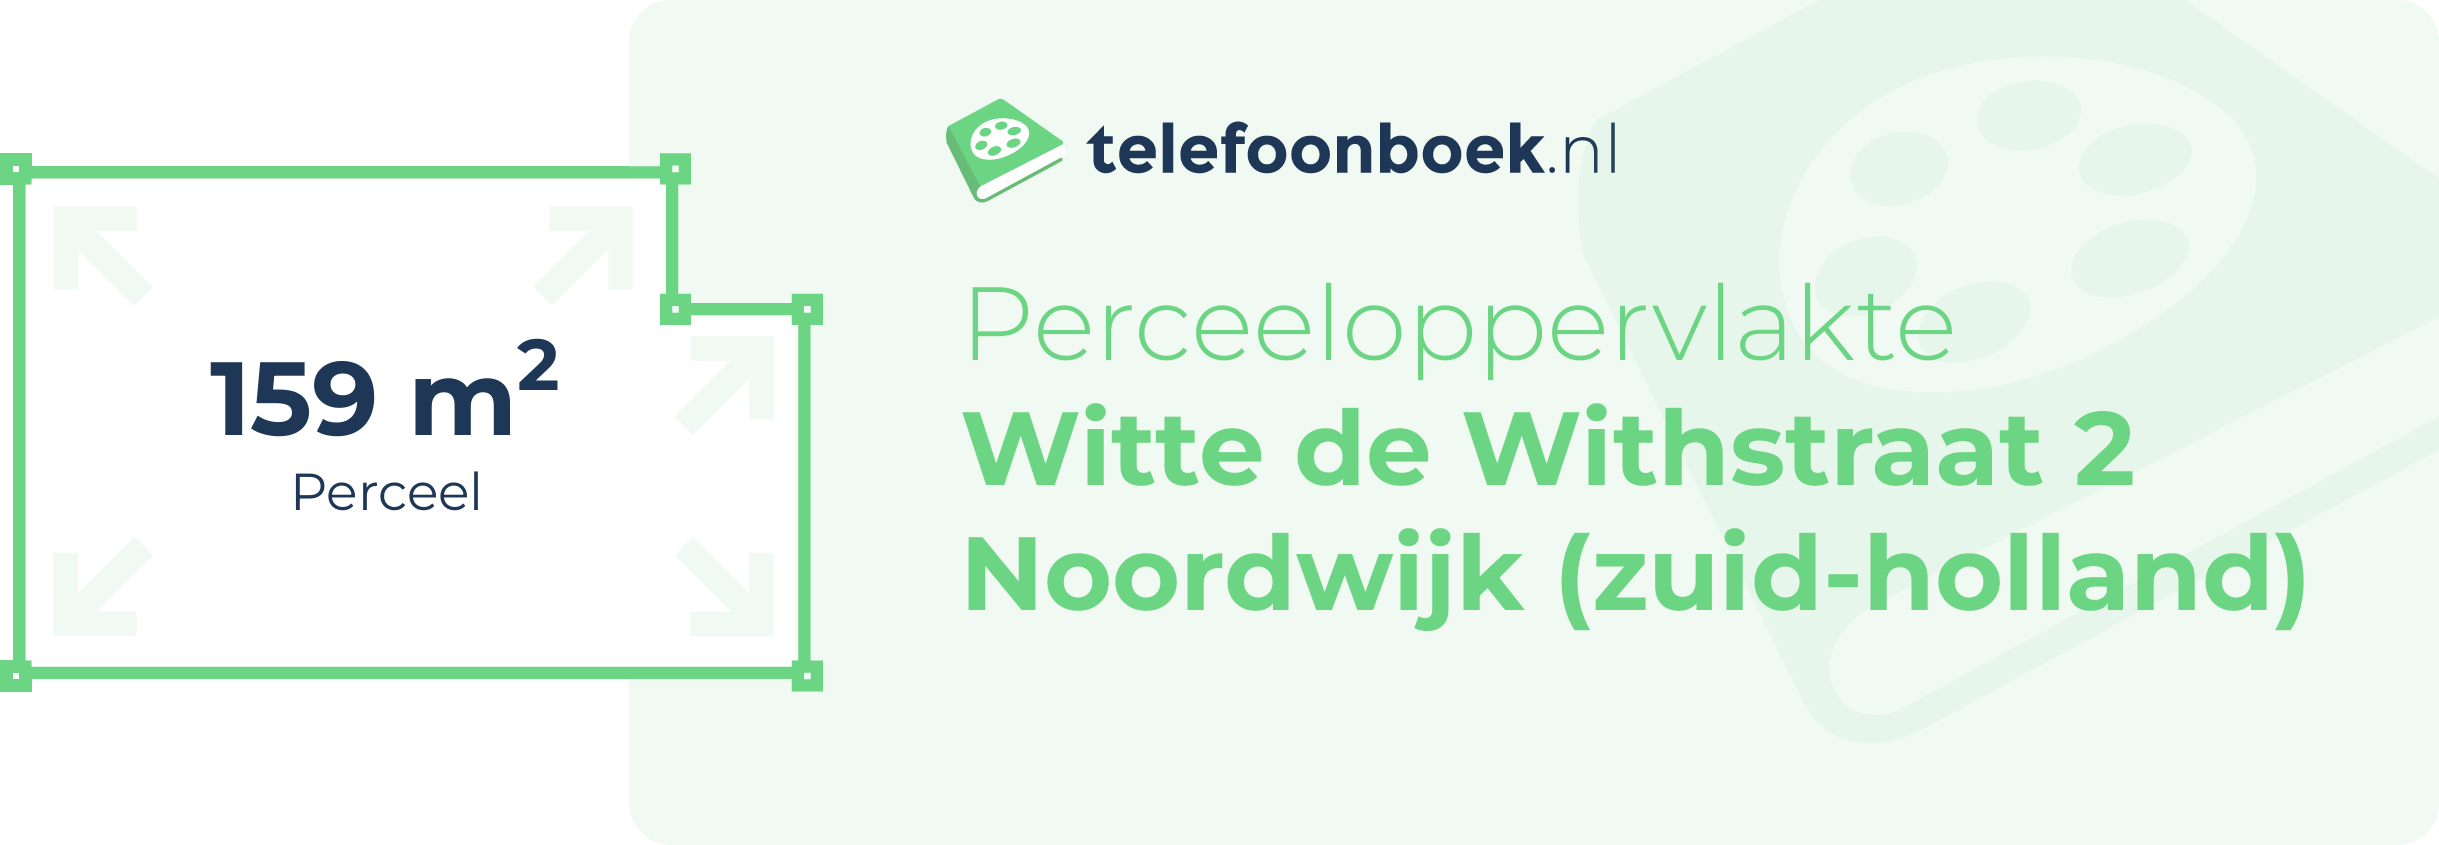 Perceeloppervlakte Witte De Withstraat 2 Noordwijk (Zuid-Holland)